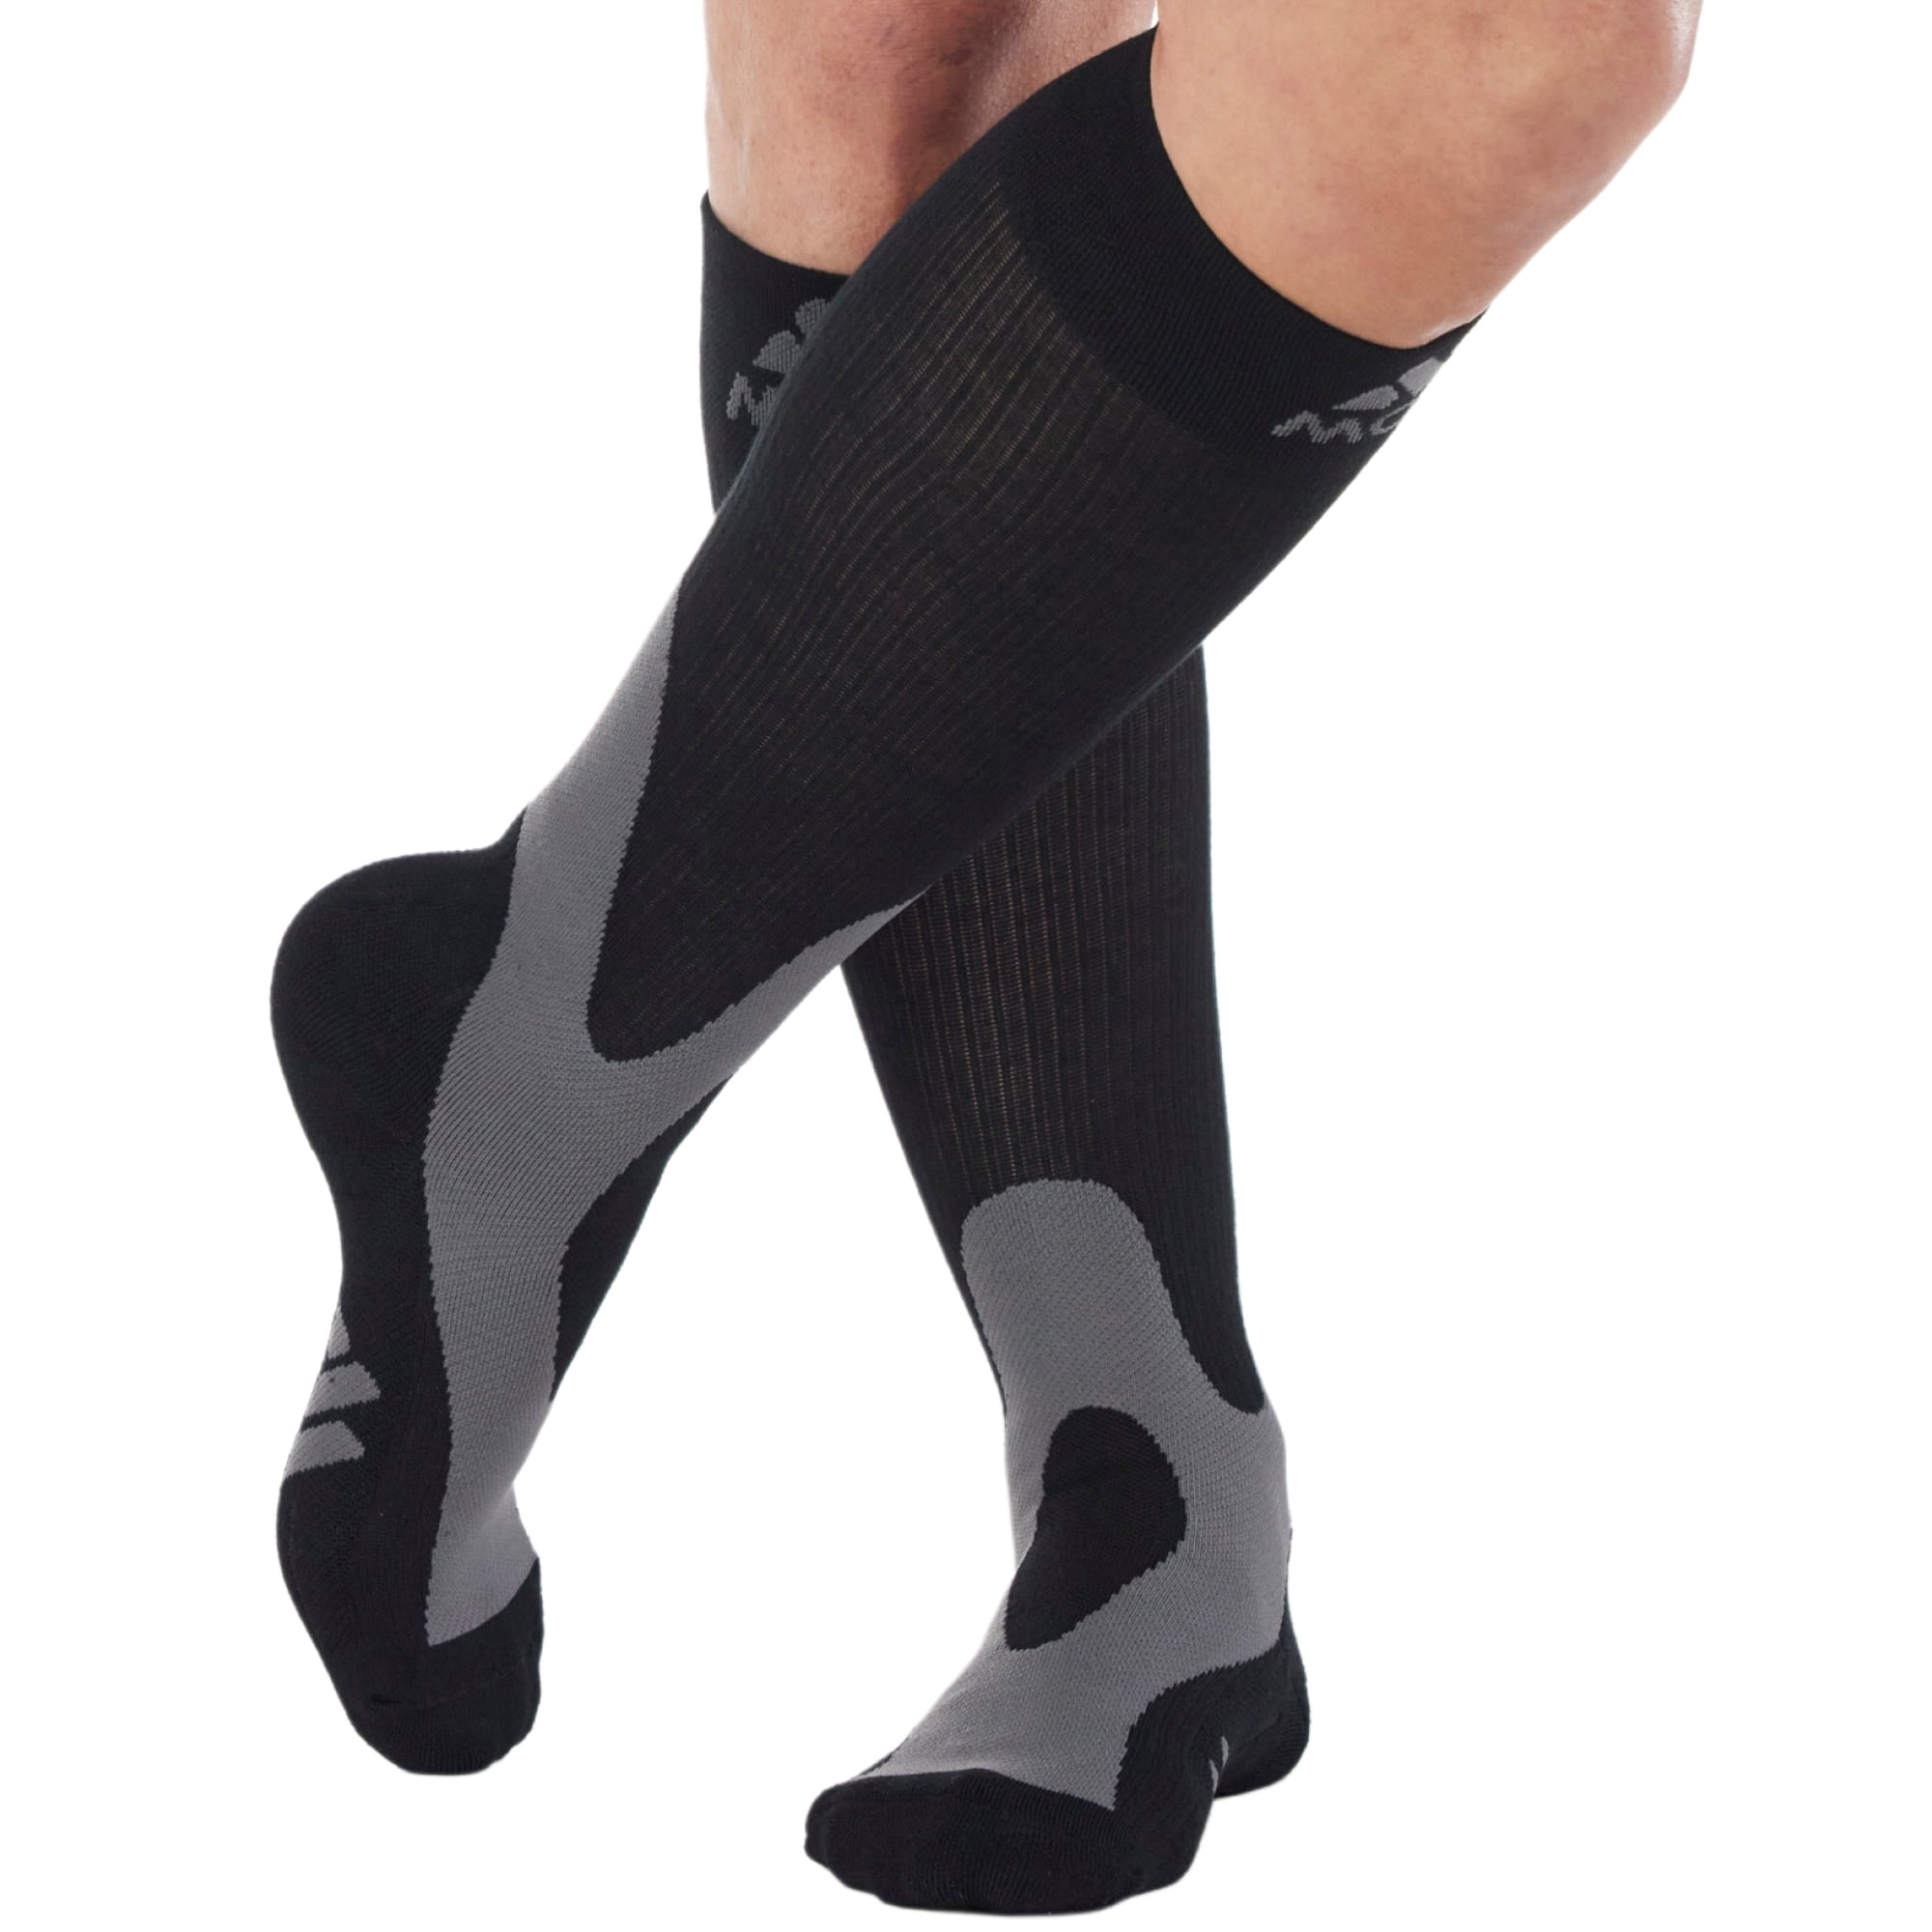 Calcetines Compresivos Medias De Compresion Chaussette De Compression Sport  Compression Sock Compression Socks for Men - AliExpress